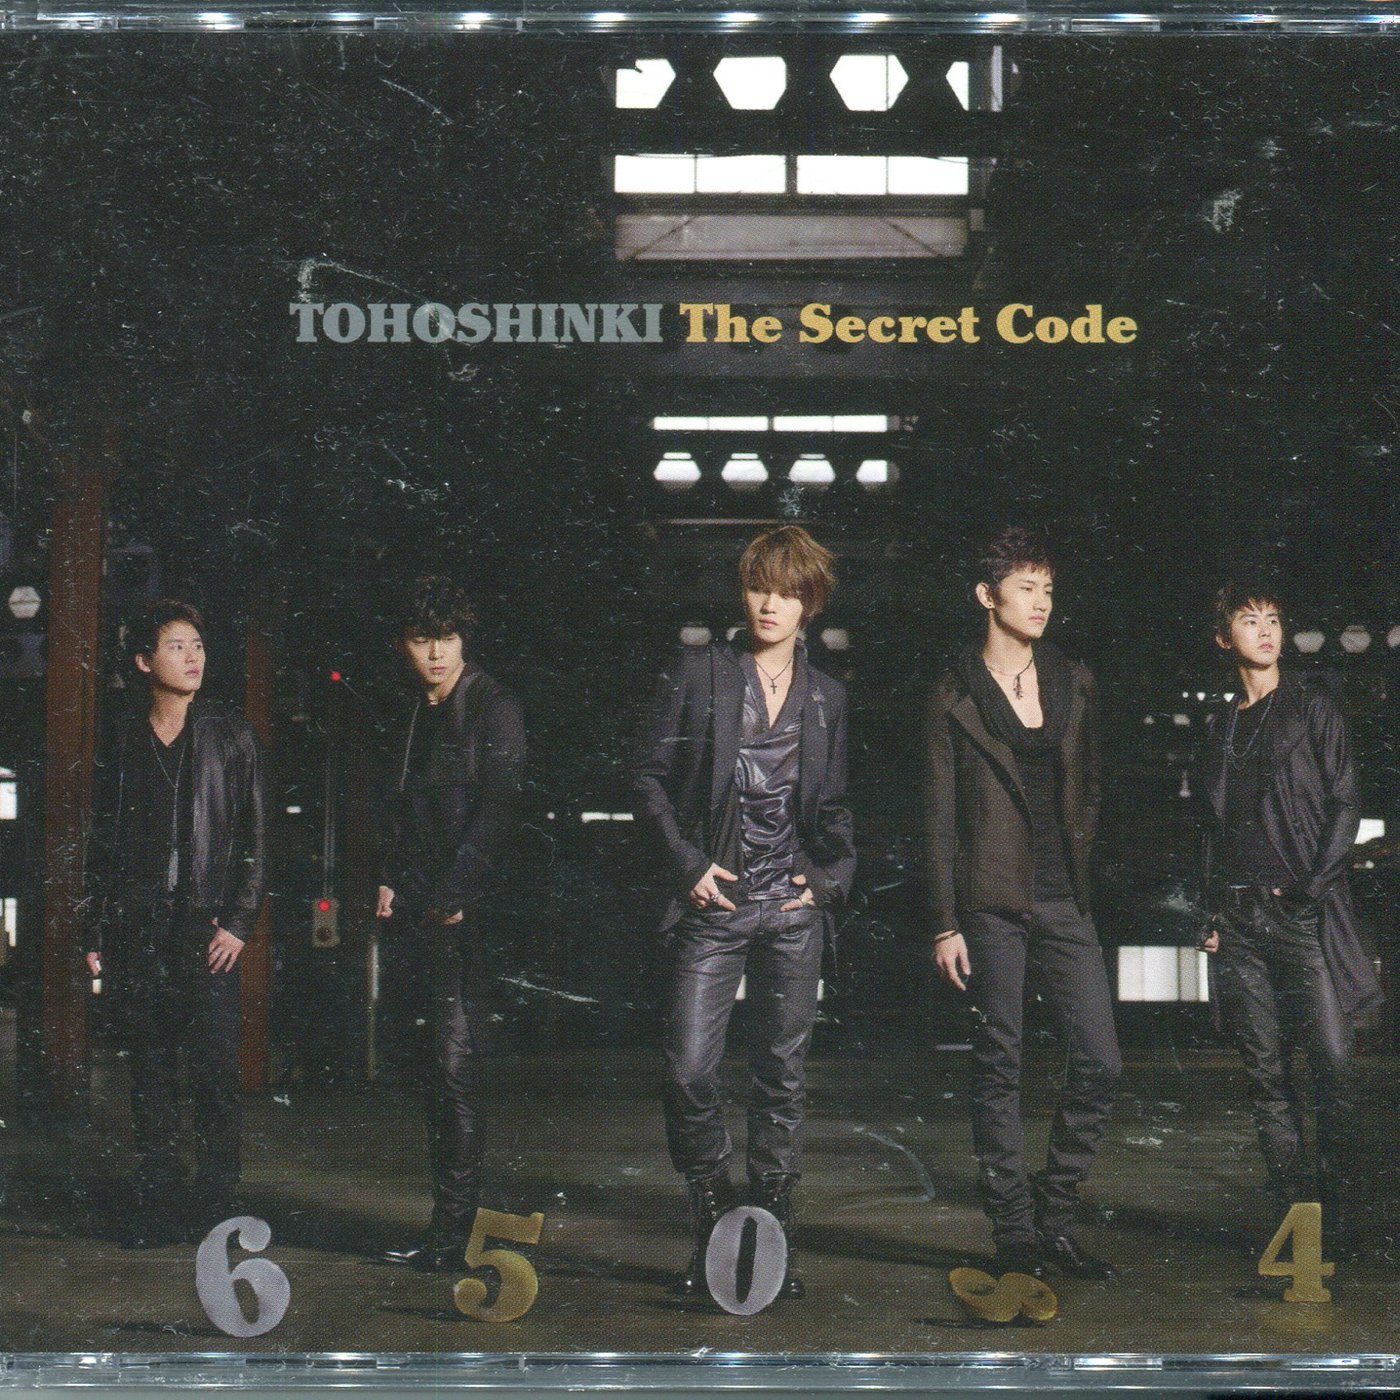 【嘟嘟音樂坊】東方神起Tohoshinki - 神起密碼The Secret Code 2CD 